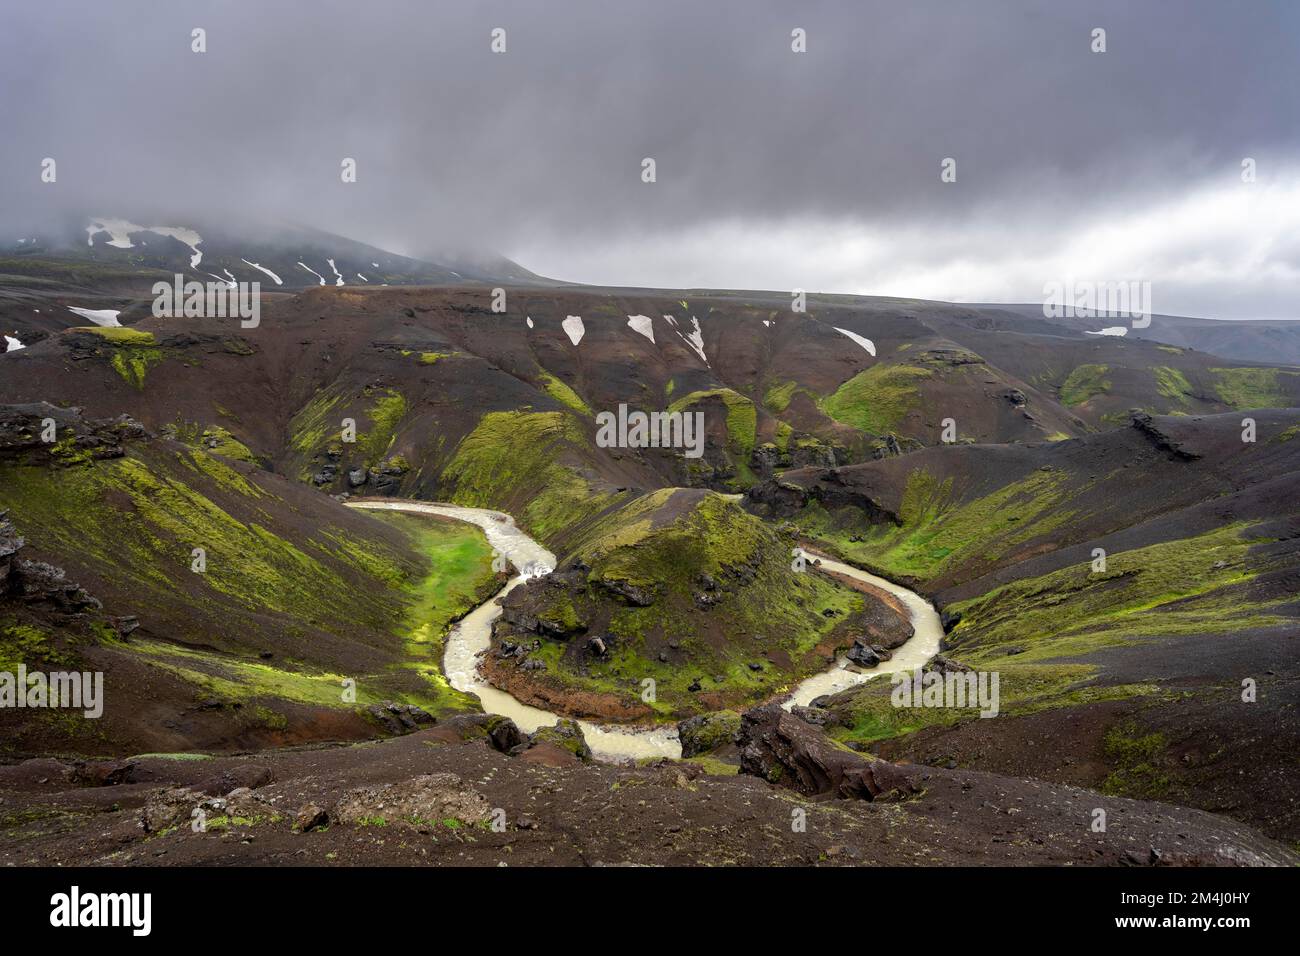 Flussbiegung, Fuß Asgardsa, vulkanische Landschaft mit schwarzen Felsen und grünem Moos, Kerlingarfjoell, isländisches Hochland, Island Stockfoto